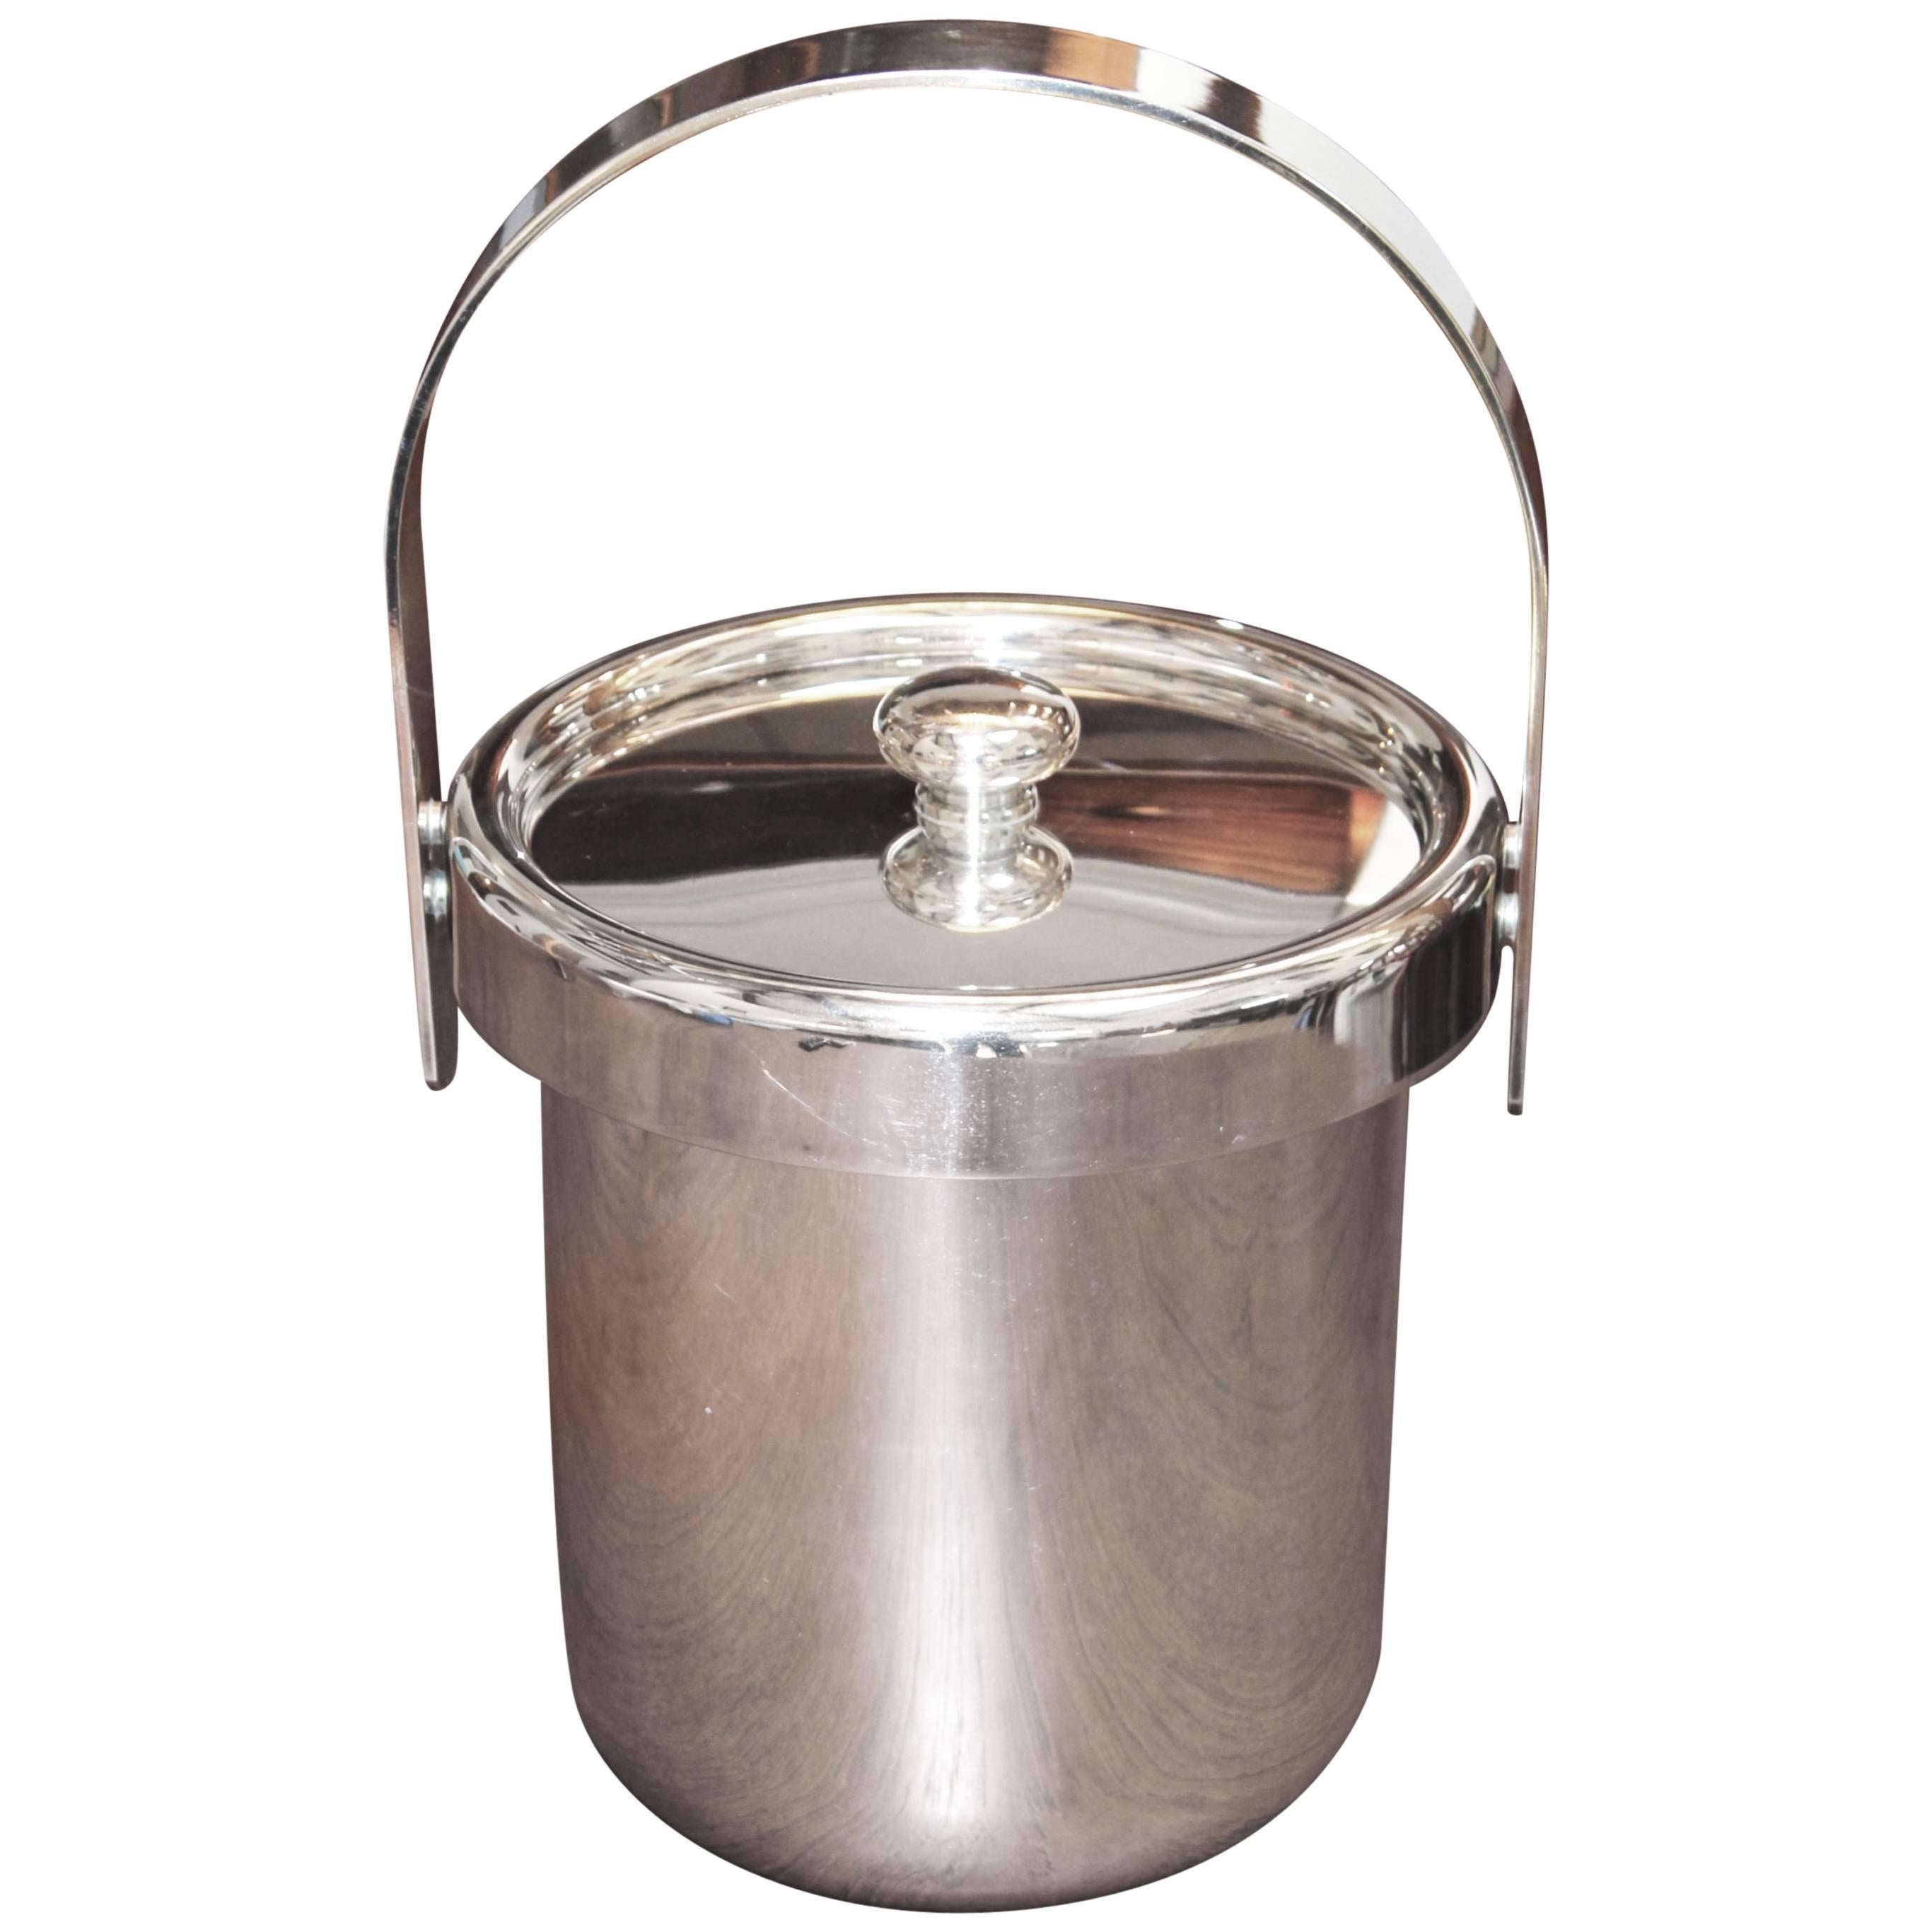 1960s Silverplate Italian Ice Bucket by Argente